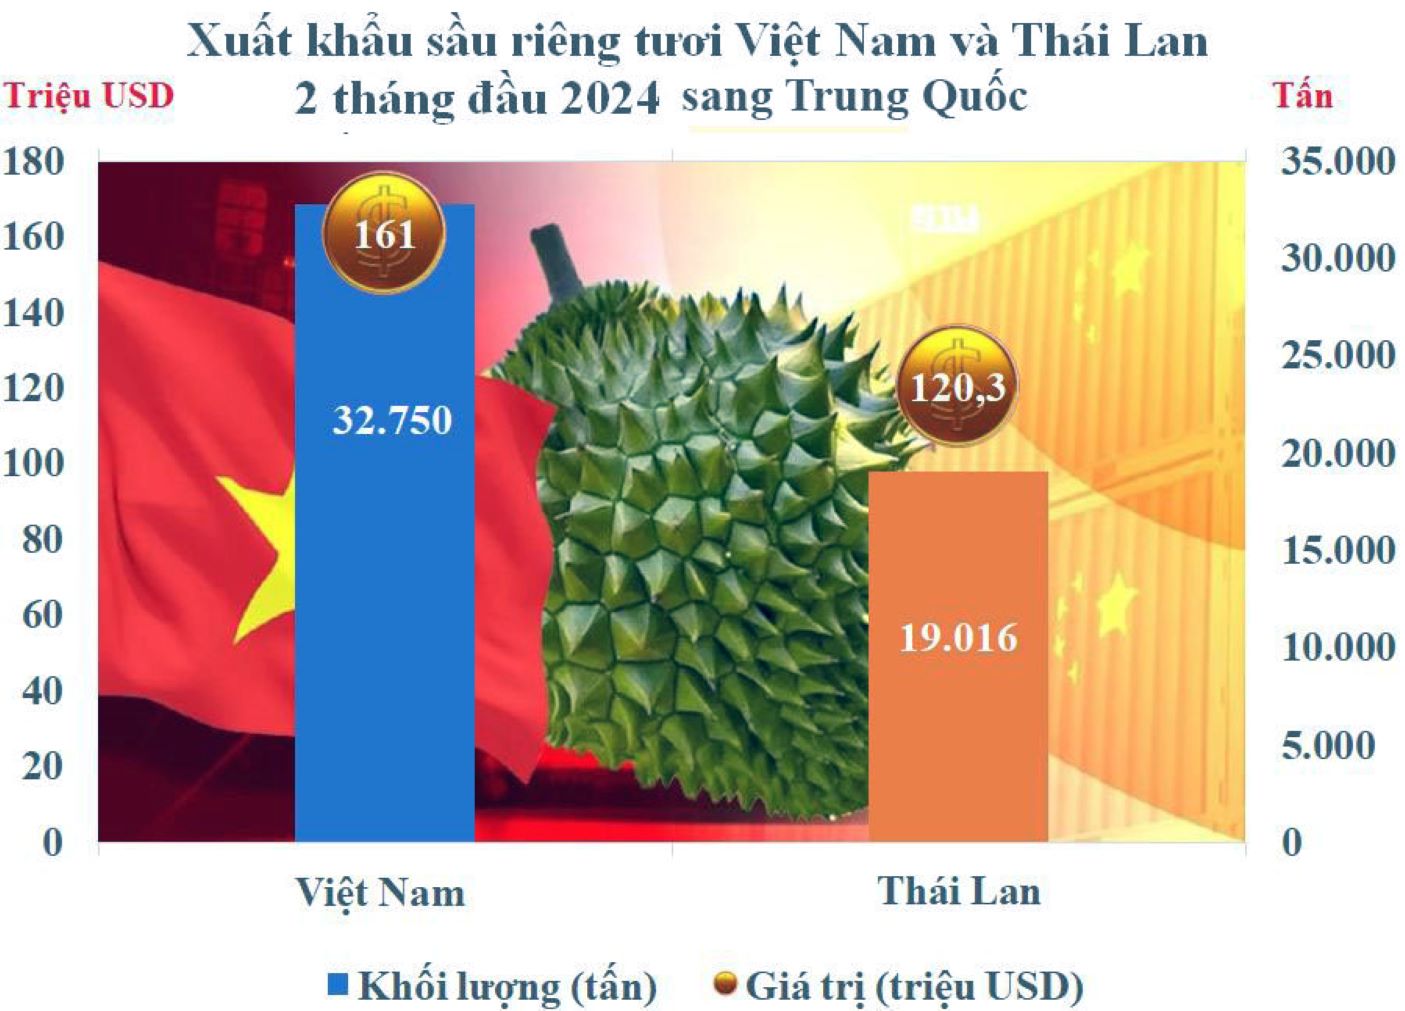 Biểu đồ thể hiện Việt Nam vượt Thái Lan xuất khẩu sầu riêng vào Trung Quốc. Ảnh: Nguyễn Phước Tuyên 